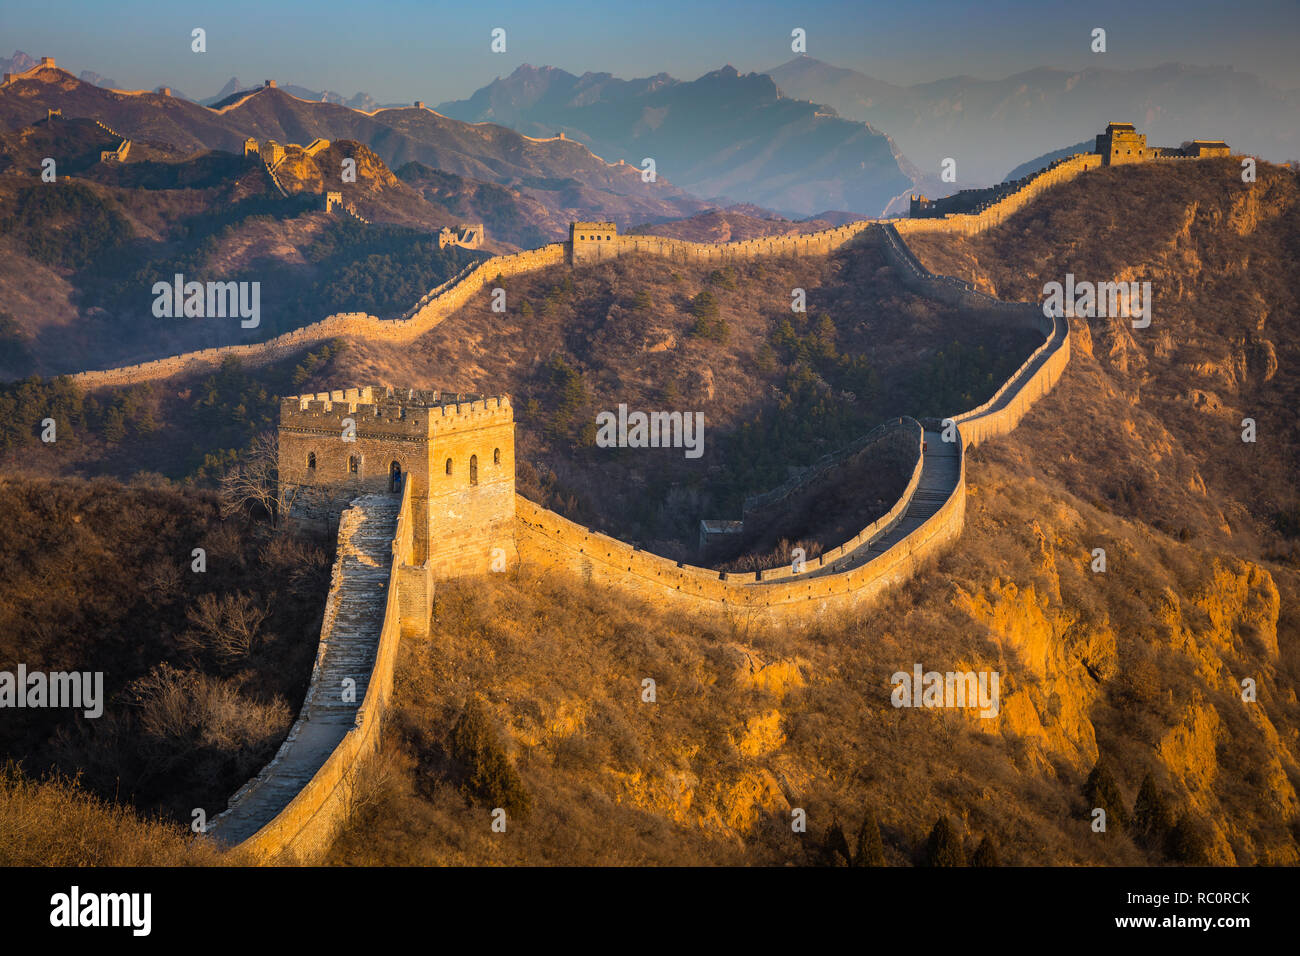 La Gran Muralla de China es una serie de fortificaciones de piedra, ladrillo, apisonó earth, madera y otros materiales. Foto de stock